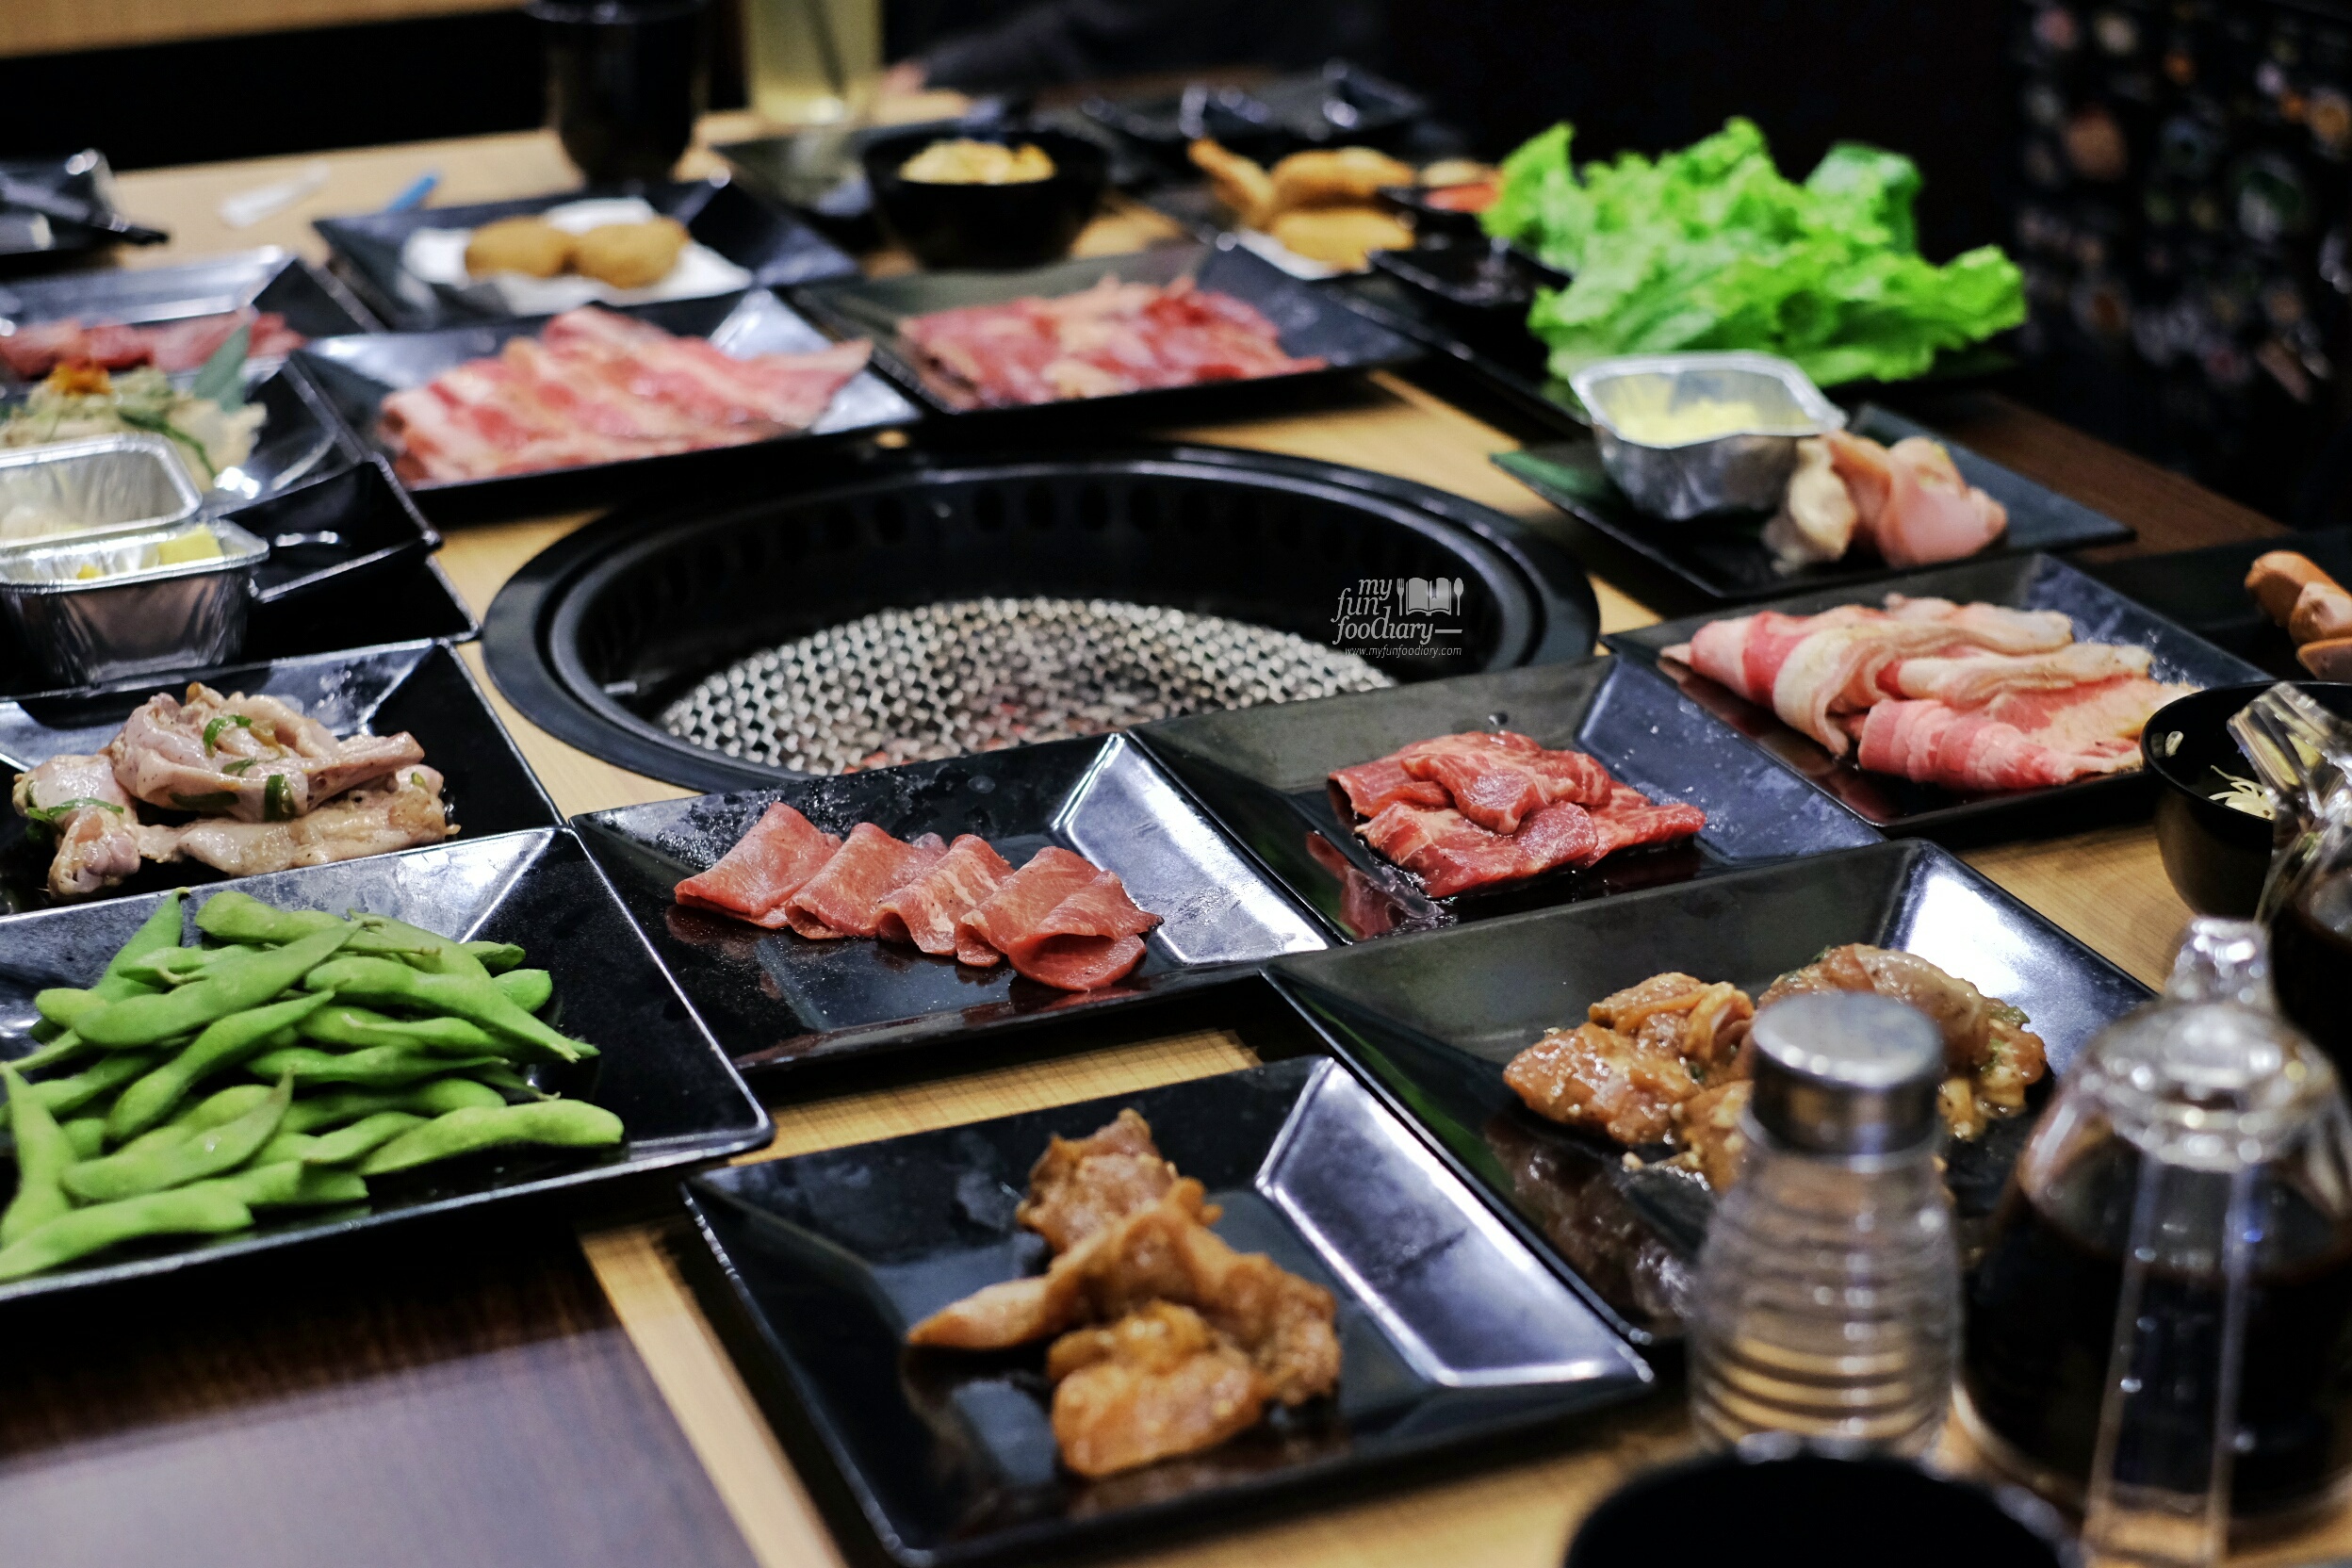 Japanese Grill BBQ All You Can Eat at Gyukaku Lippo Mall Puri by Myfunfoodiary 01